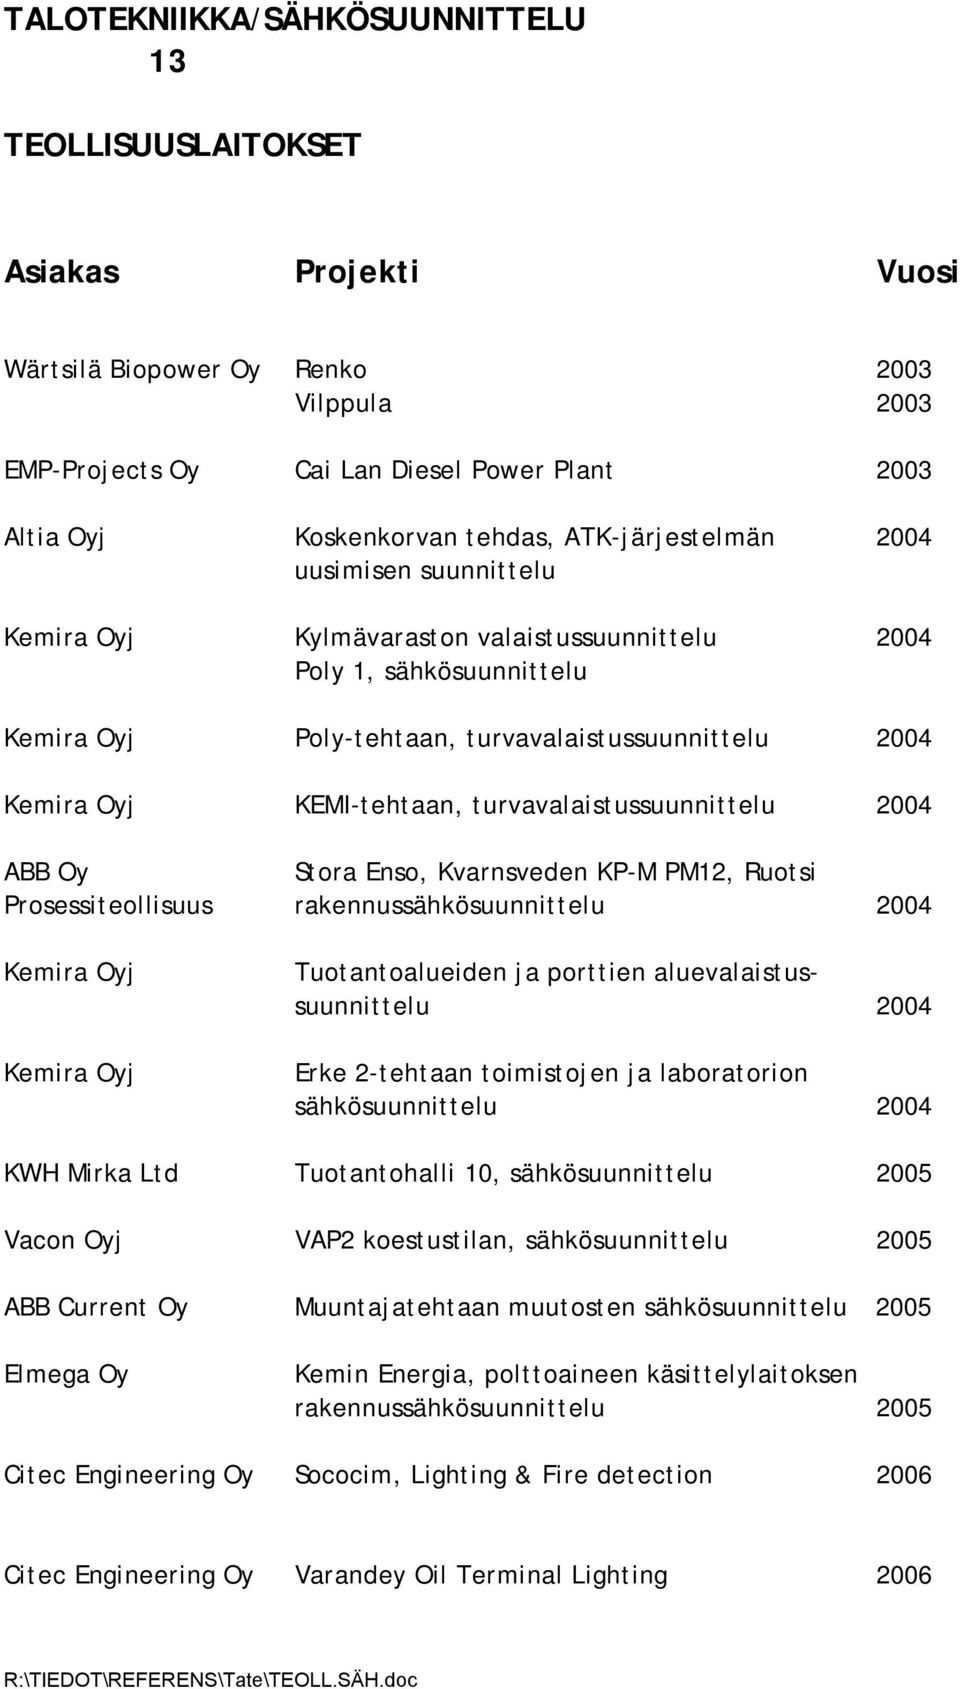 ABB Oy Stora Enso, Kvarnsveden KP-M PM12, Ruotsi Prosessiteollisuus rakennussähkösuunnittelu 2004 Kemira Oyj Kemira Oyj Tuotantoalueiden ja porttien aluevalaistussuunnittelu 2004 Erke 2-tehtaan